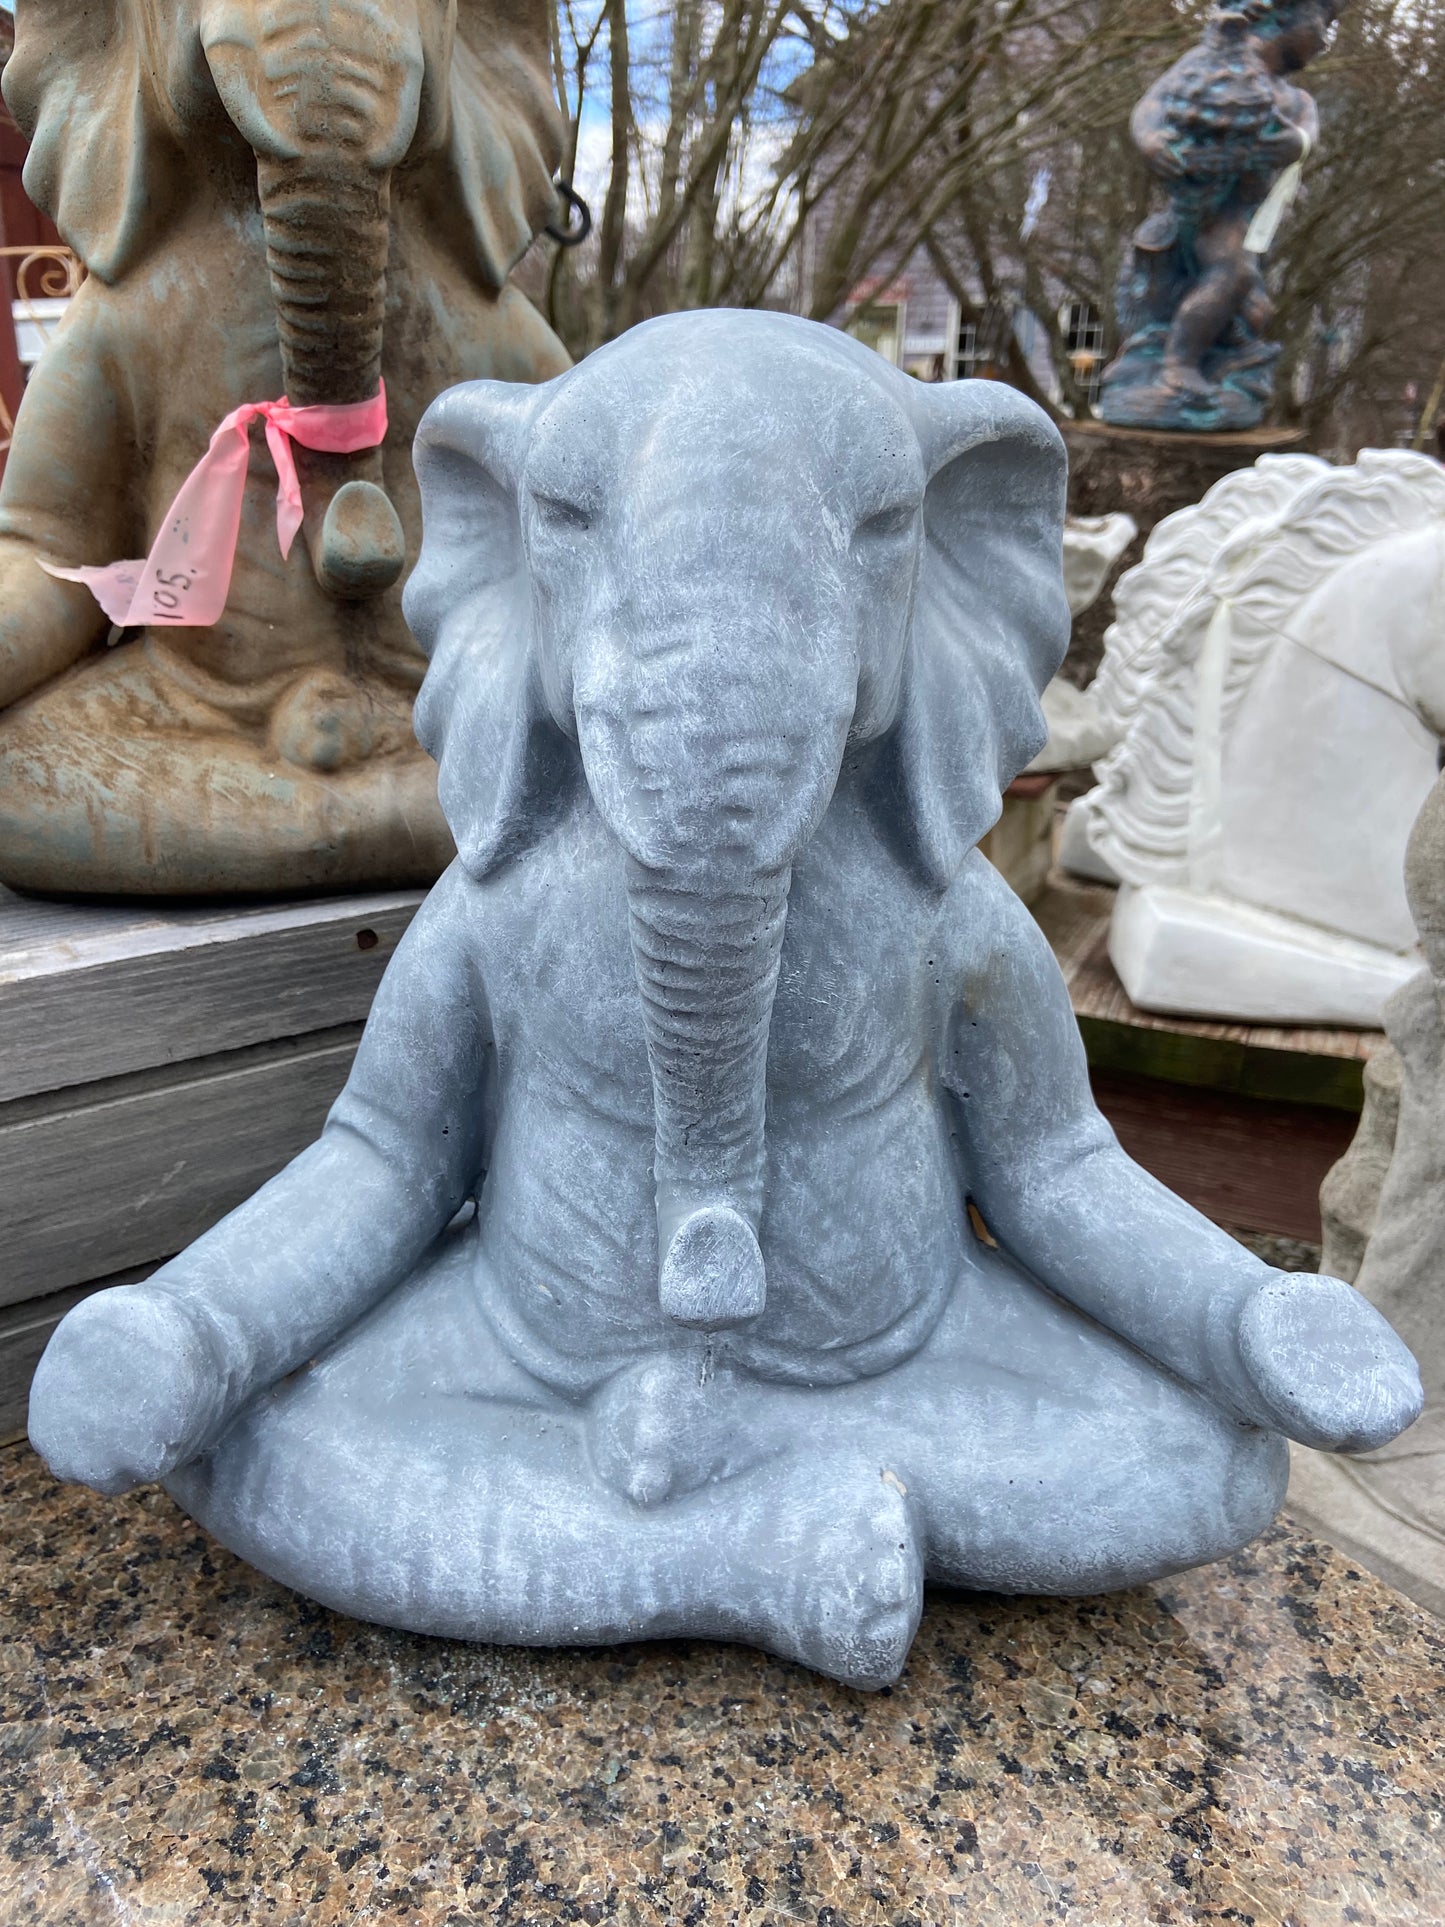 Zen Elephant